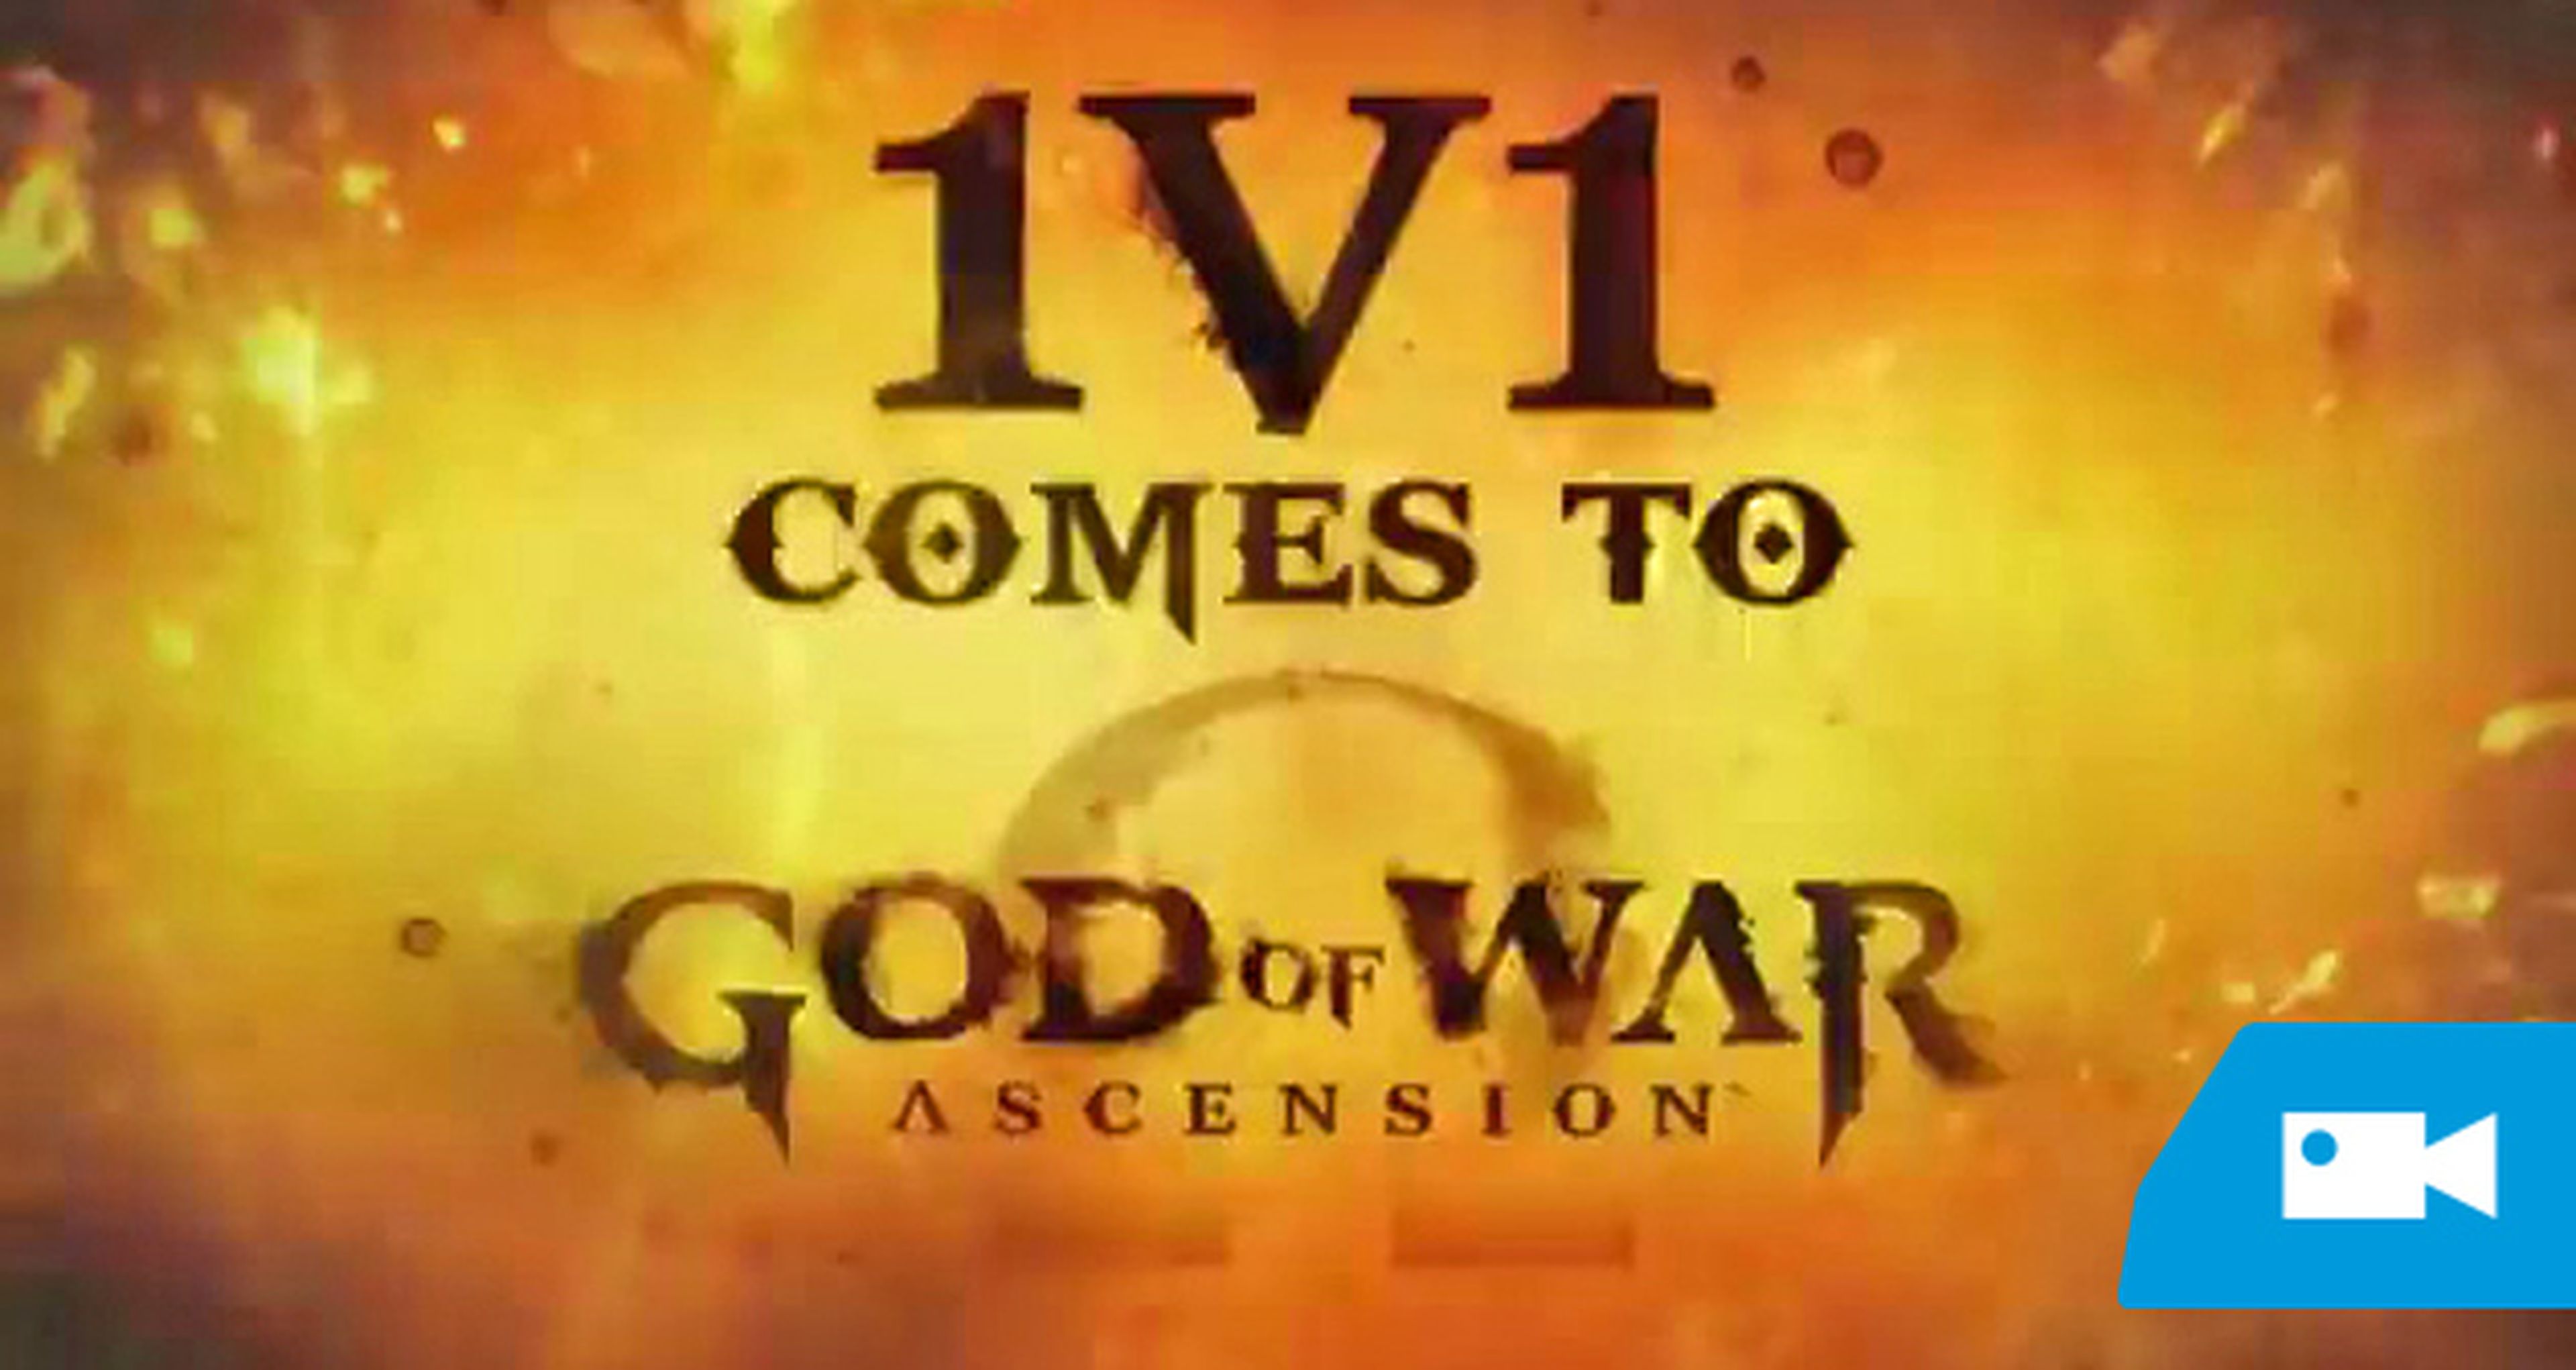 God of War: Ascension 1v1 multijugador, gratis